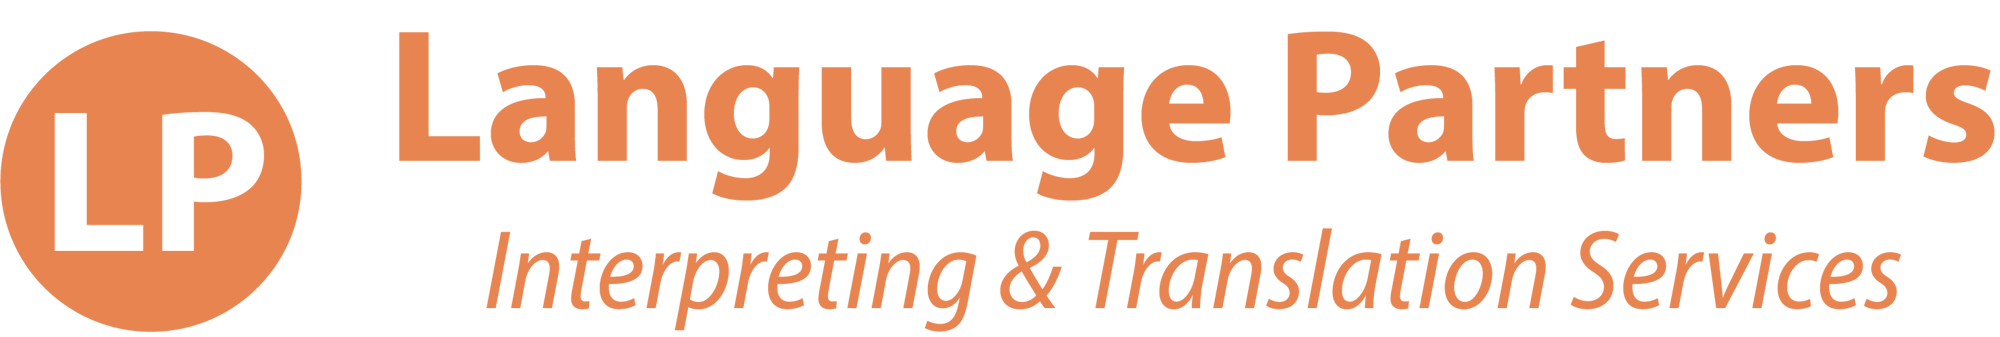 language-partners-logo